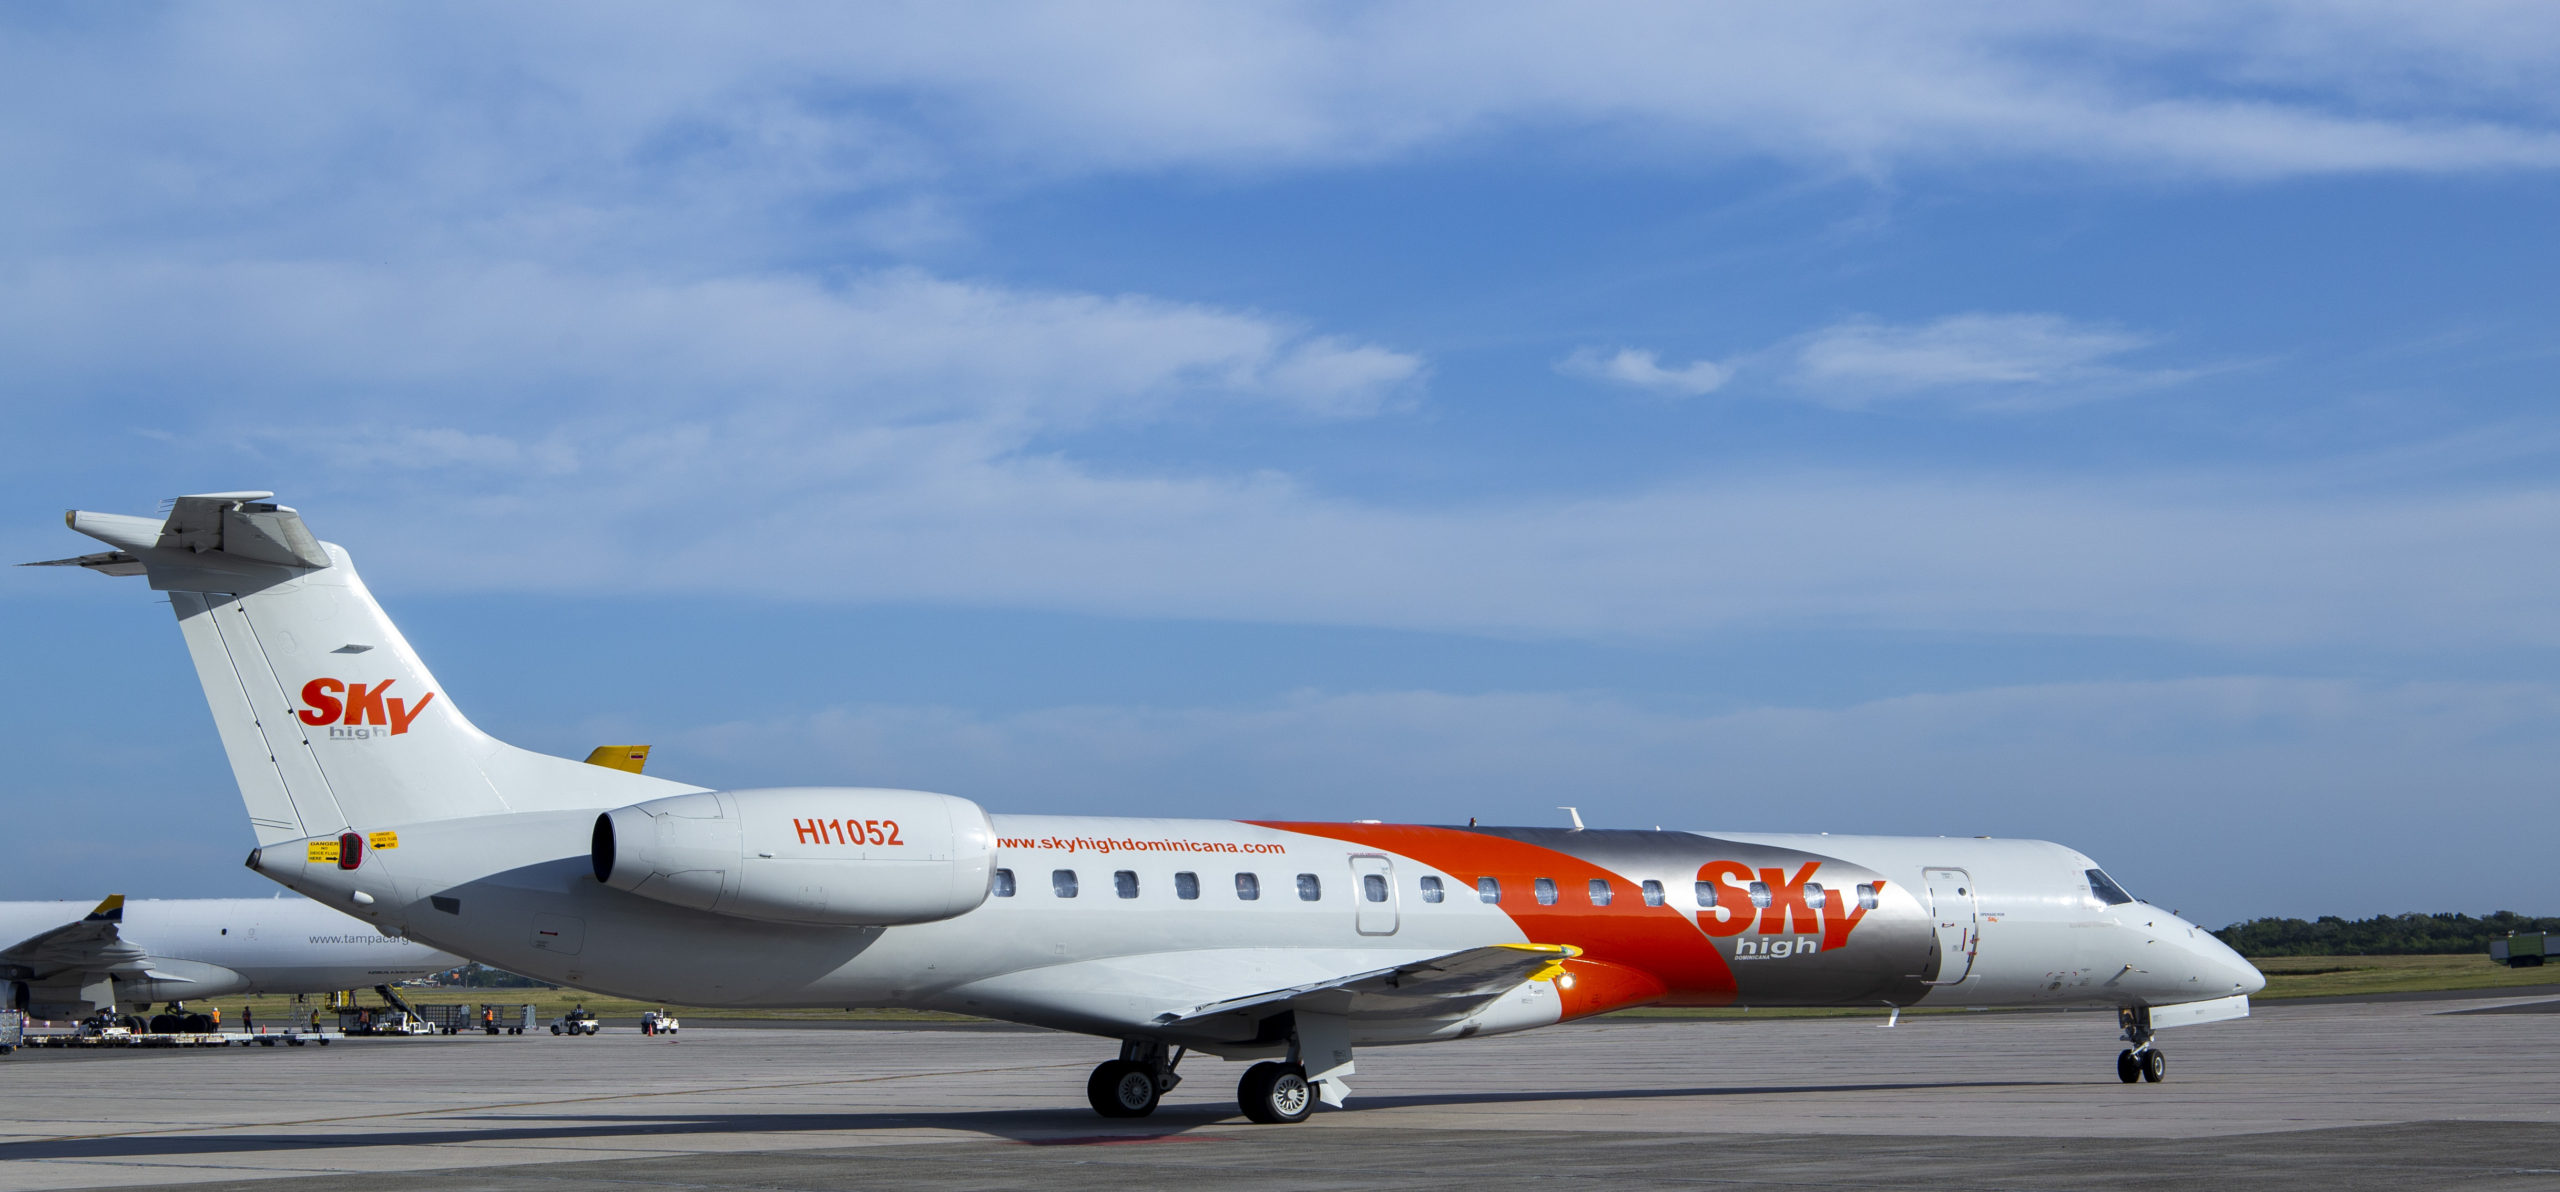 Sky High incorpora nuevas aeronaves para expandir sus vuelos en